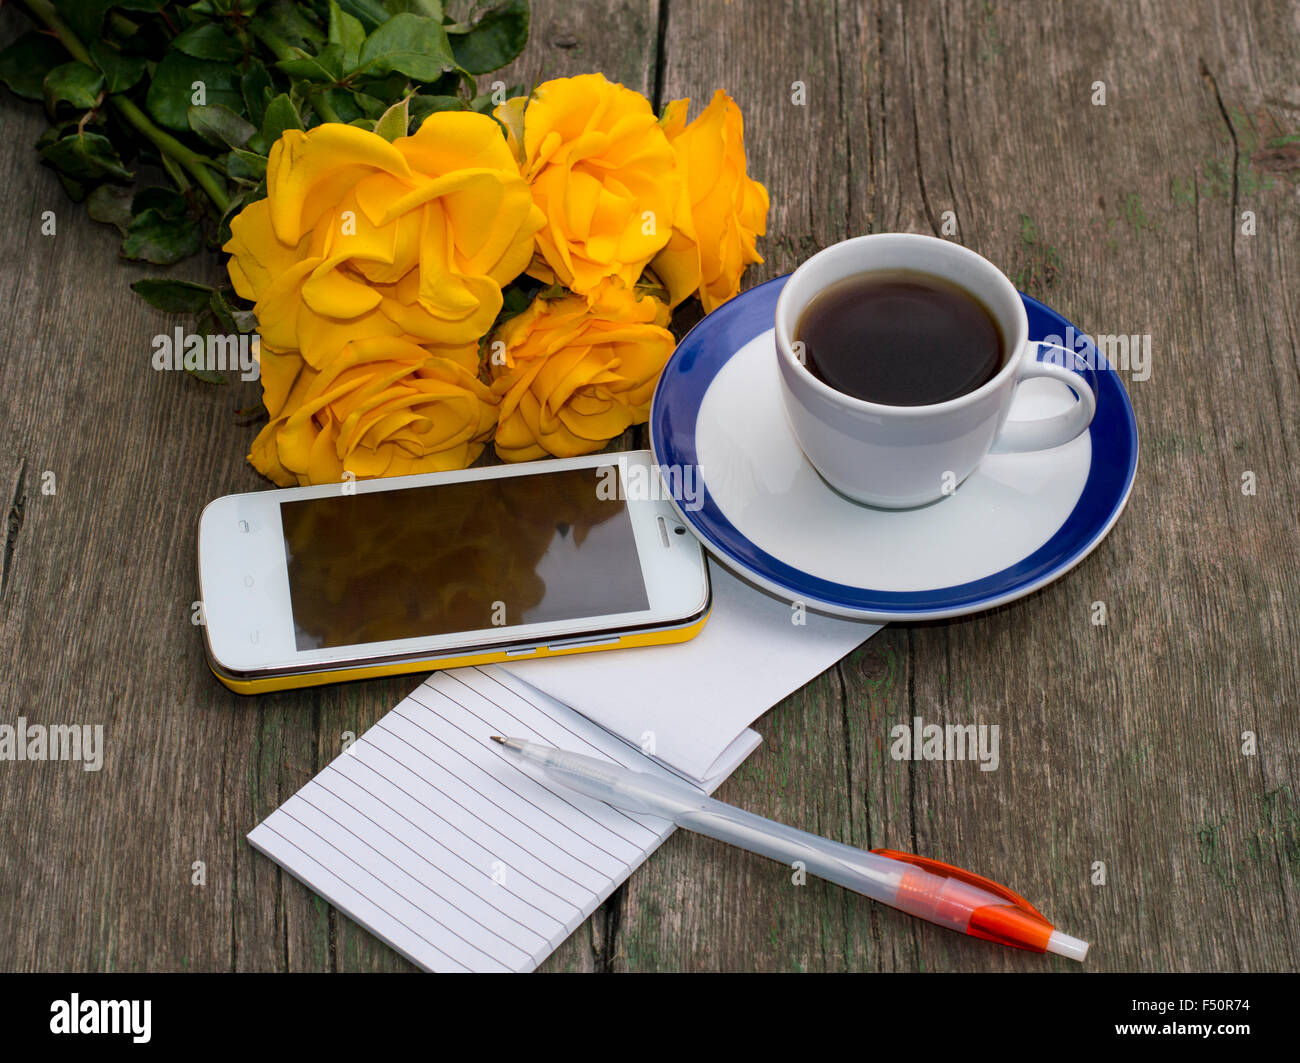 Tasse de café, le bouquet de roses jaunes, d'un téléphone, de la poignée, la vue de dessus, sur une table en bois, une nature morte, un objet beau fl Banque D'Images